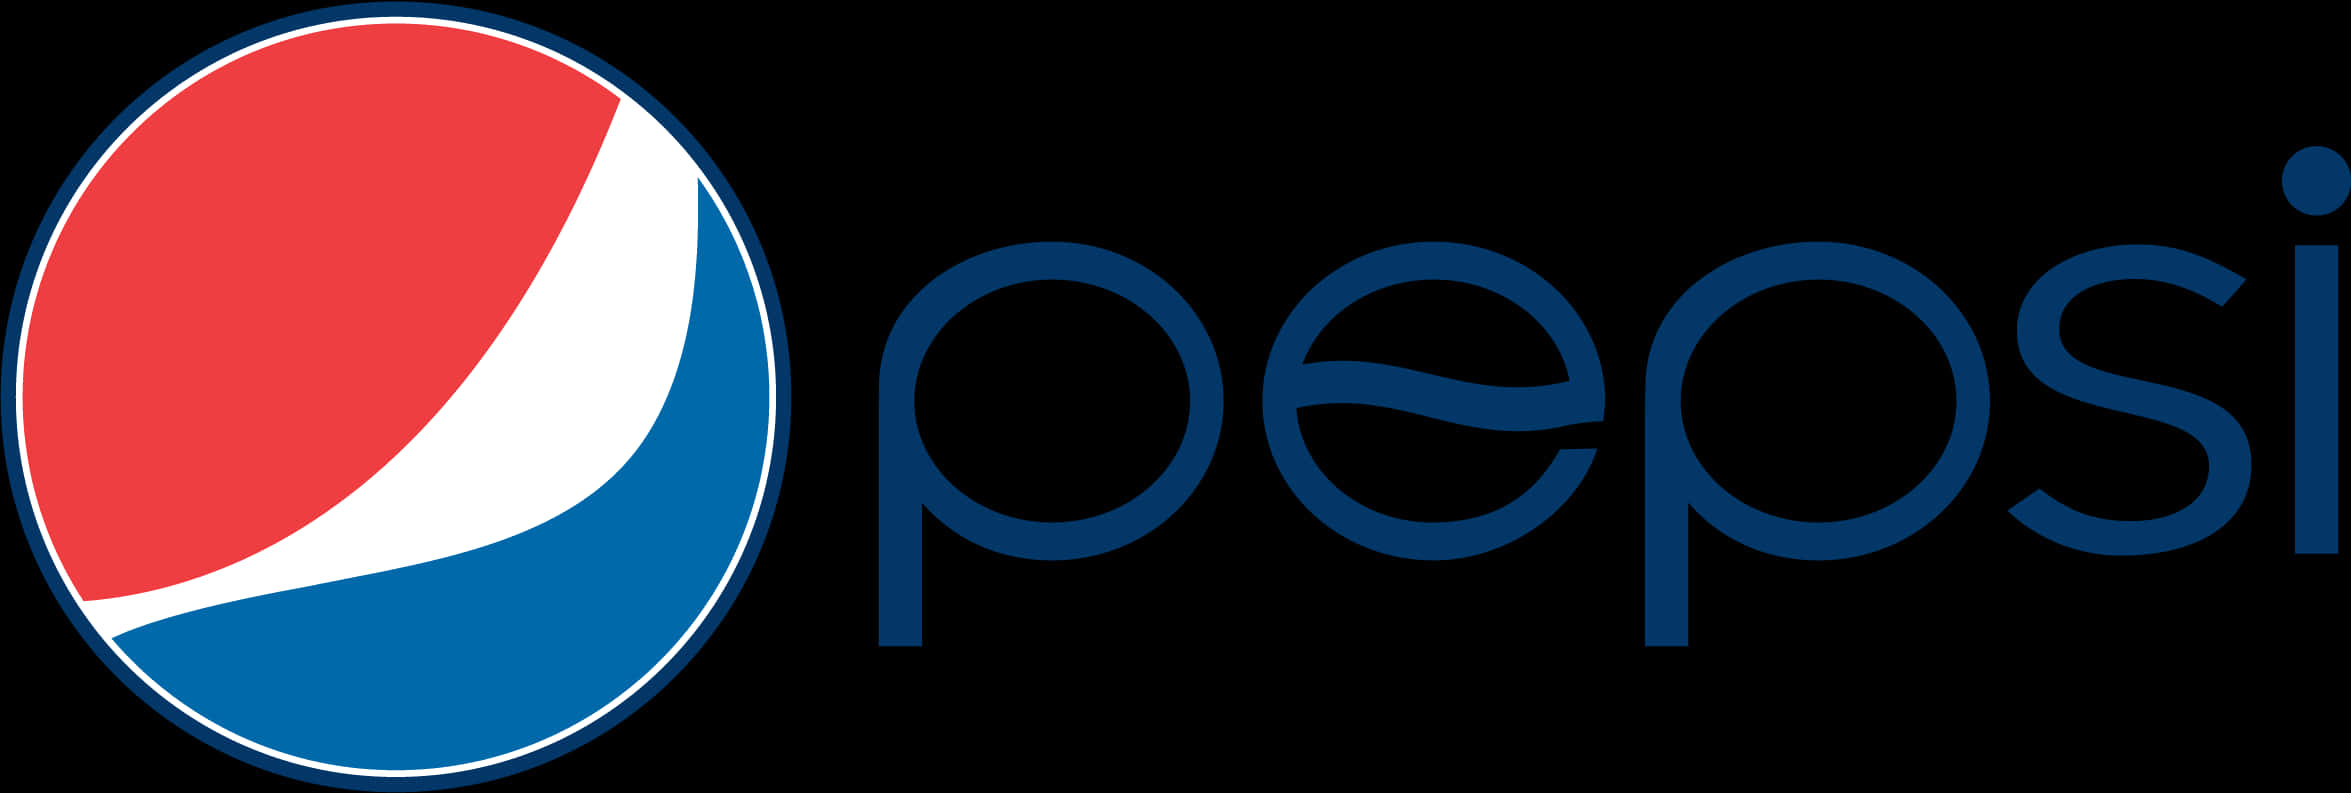 Pepsi Logo Current Design